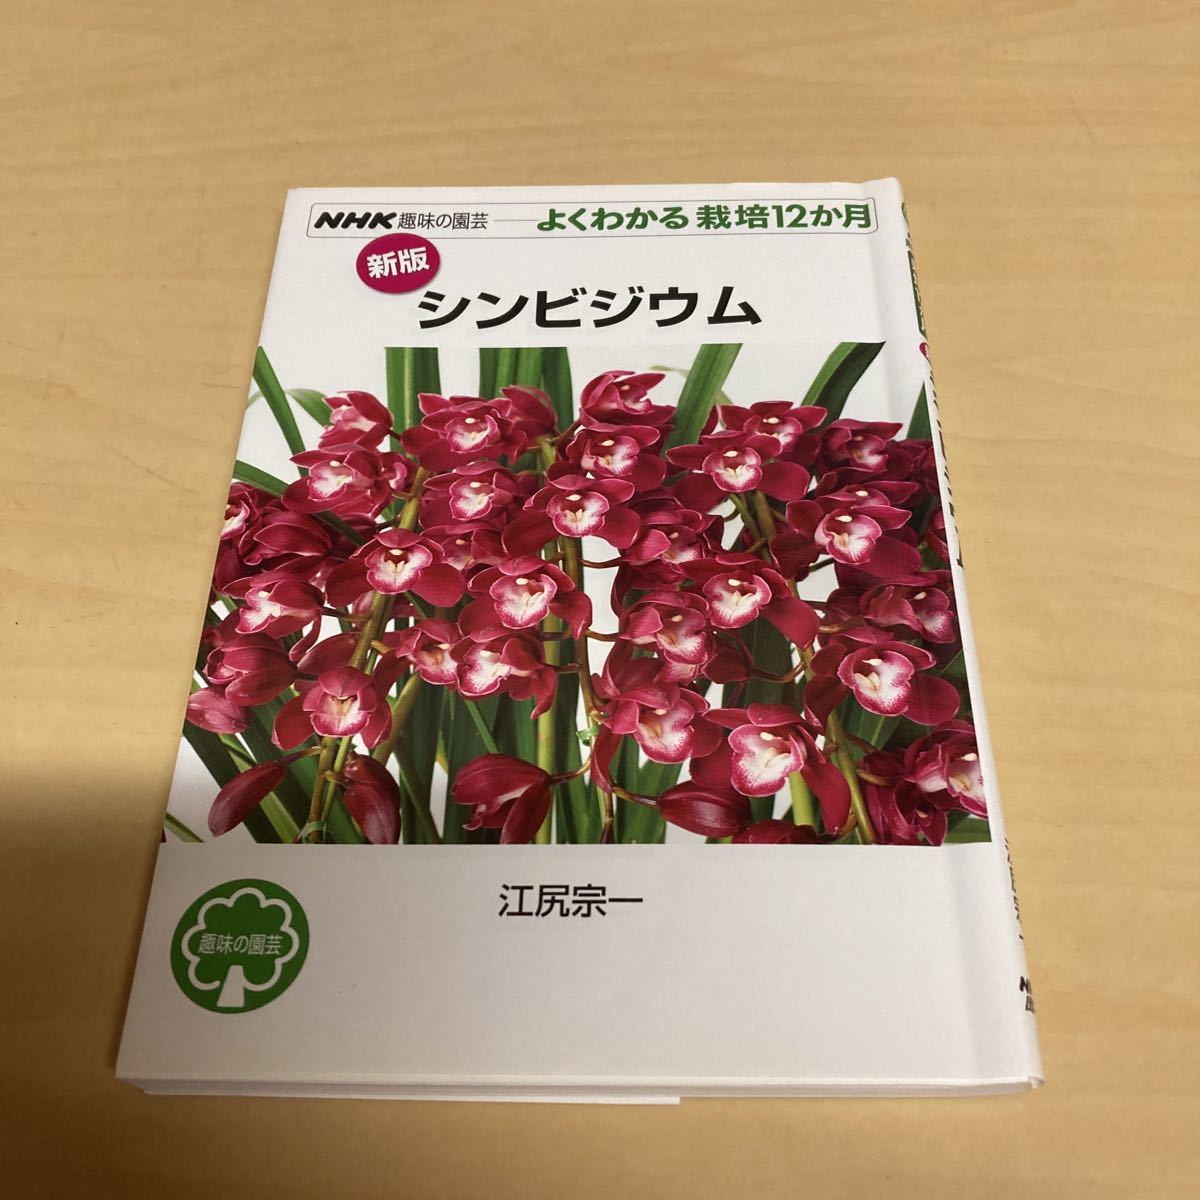 NHK хобби. садоводство хорошо понимать культивирование 12. месяц цимбидиум 